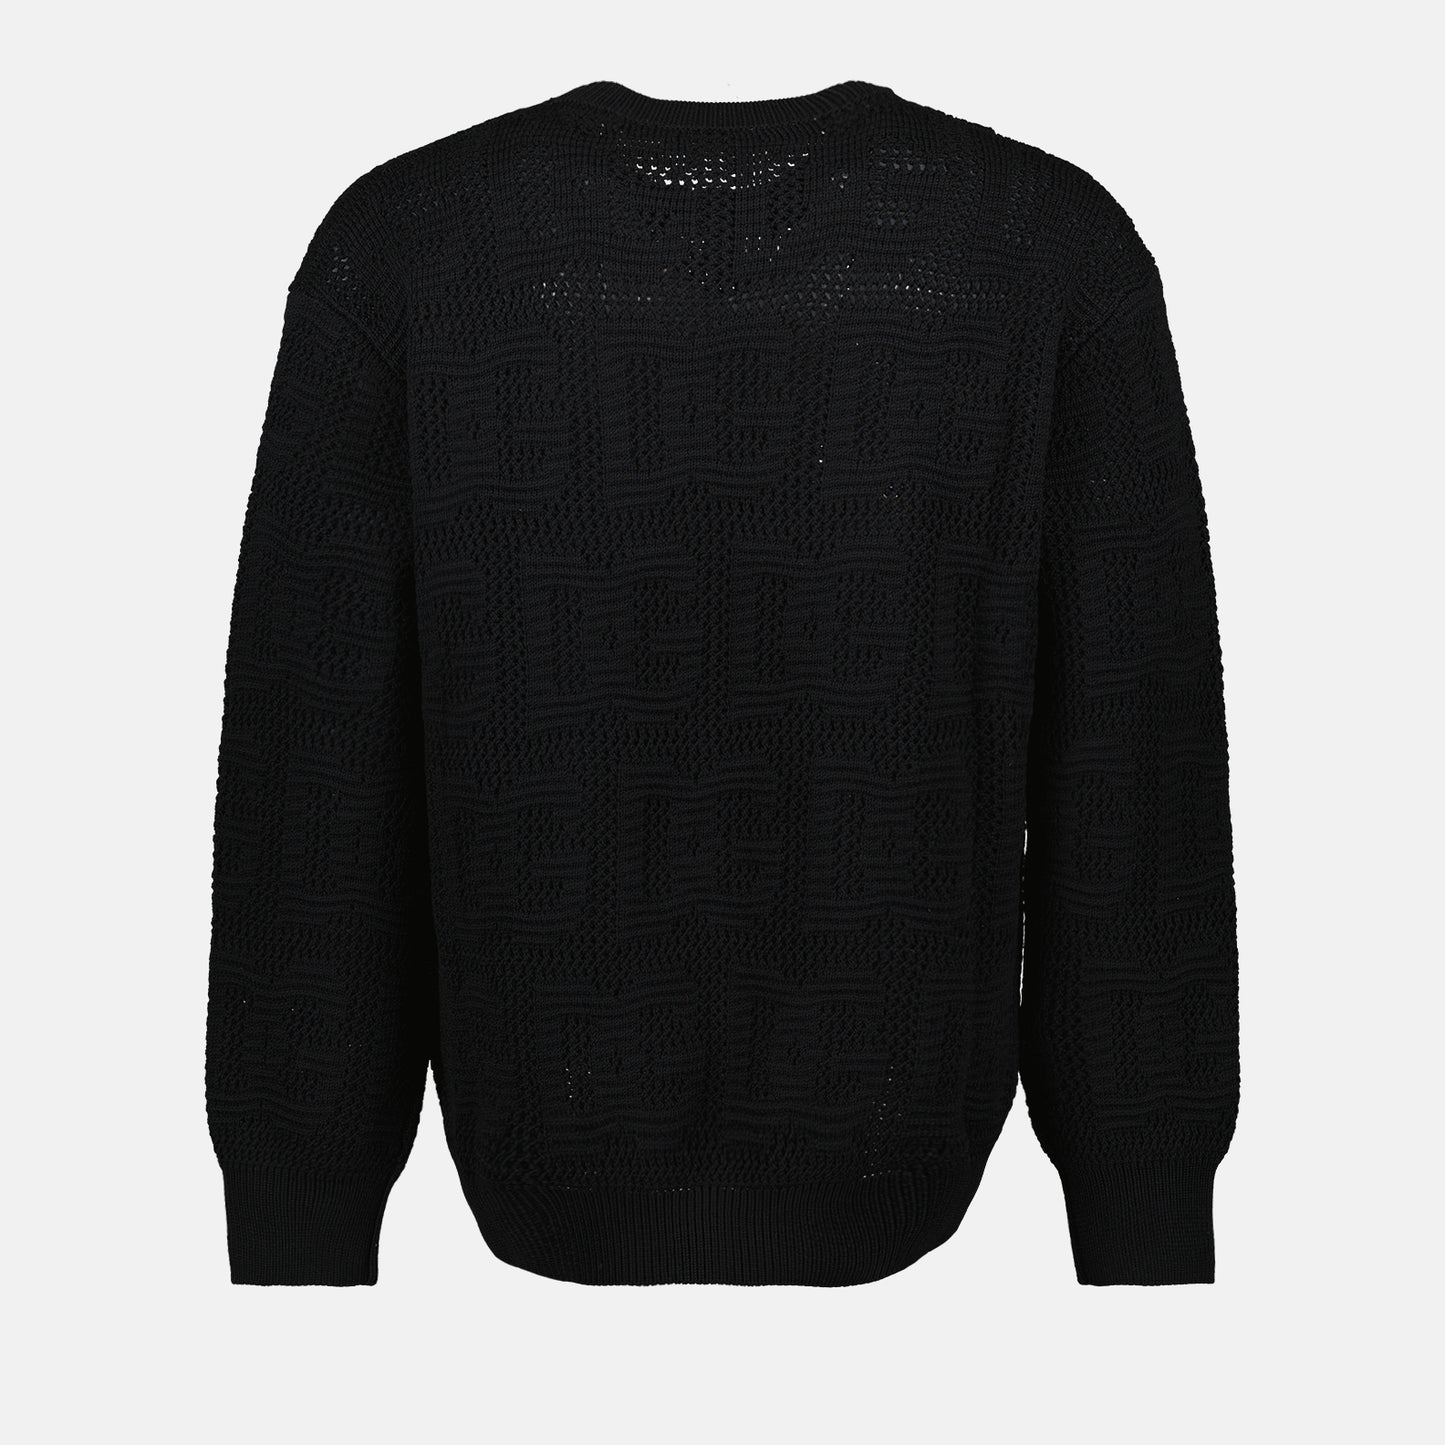 DG openwork sweater